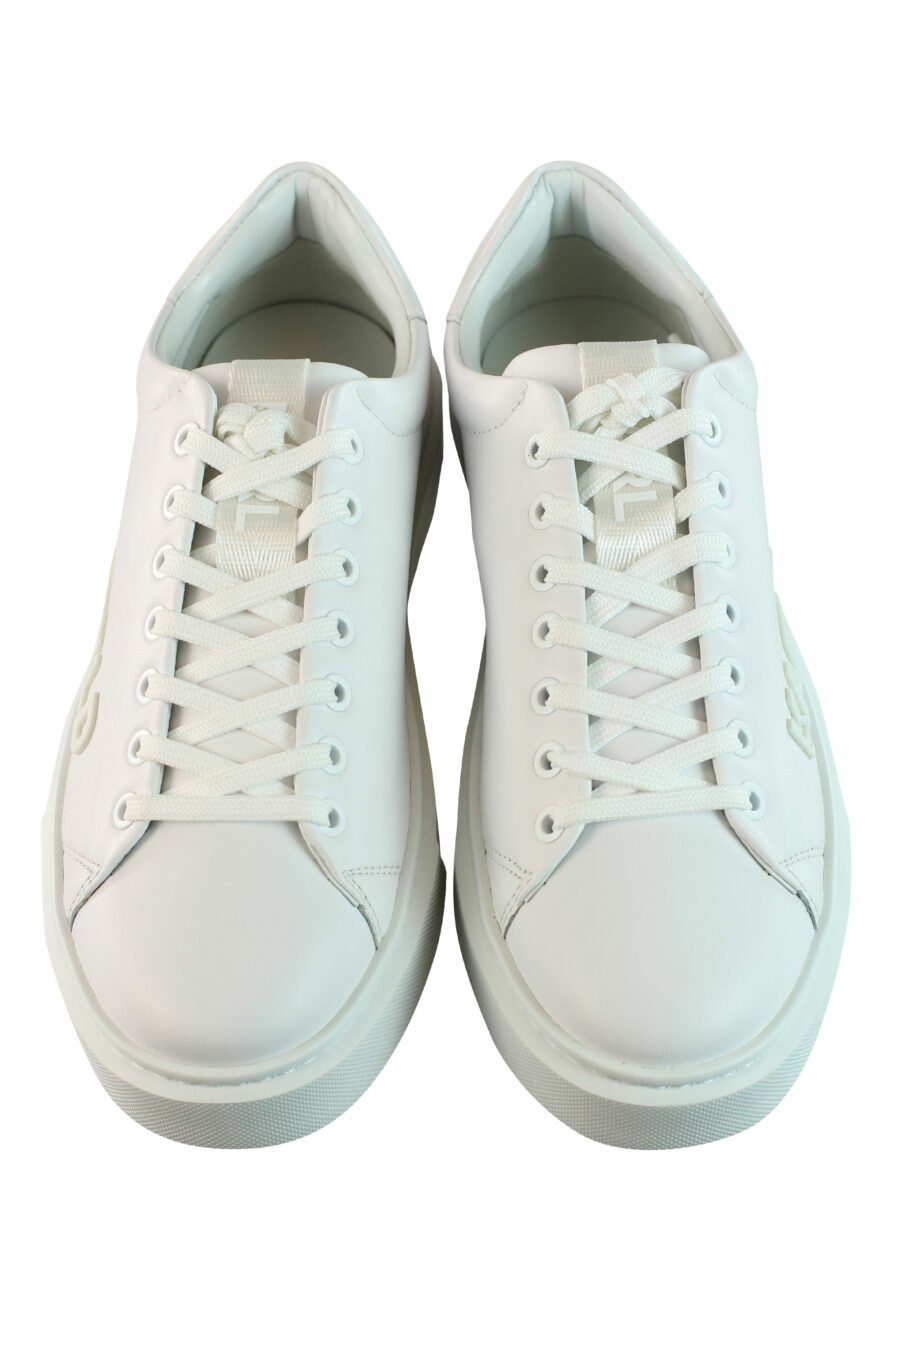 Zapatillas blancas "max kup" con logo blanco - IMG 0873